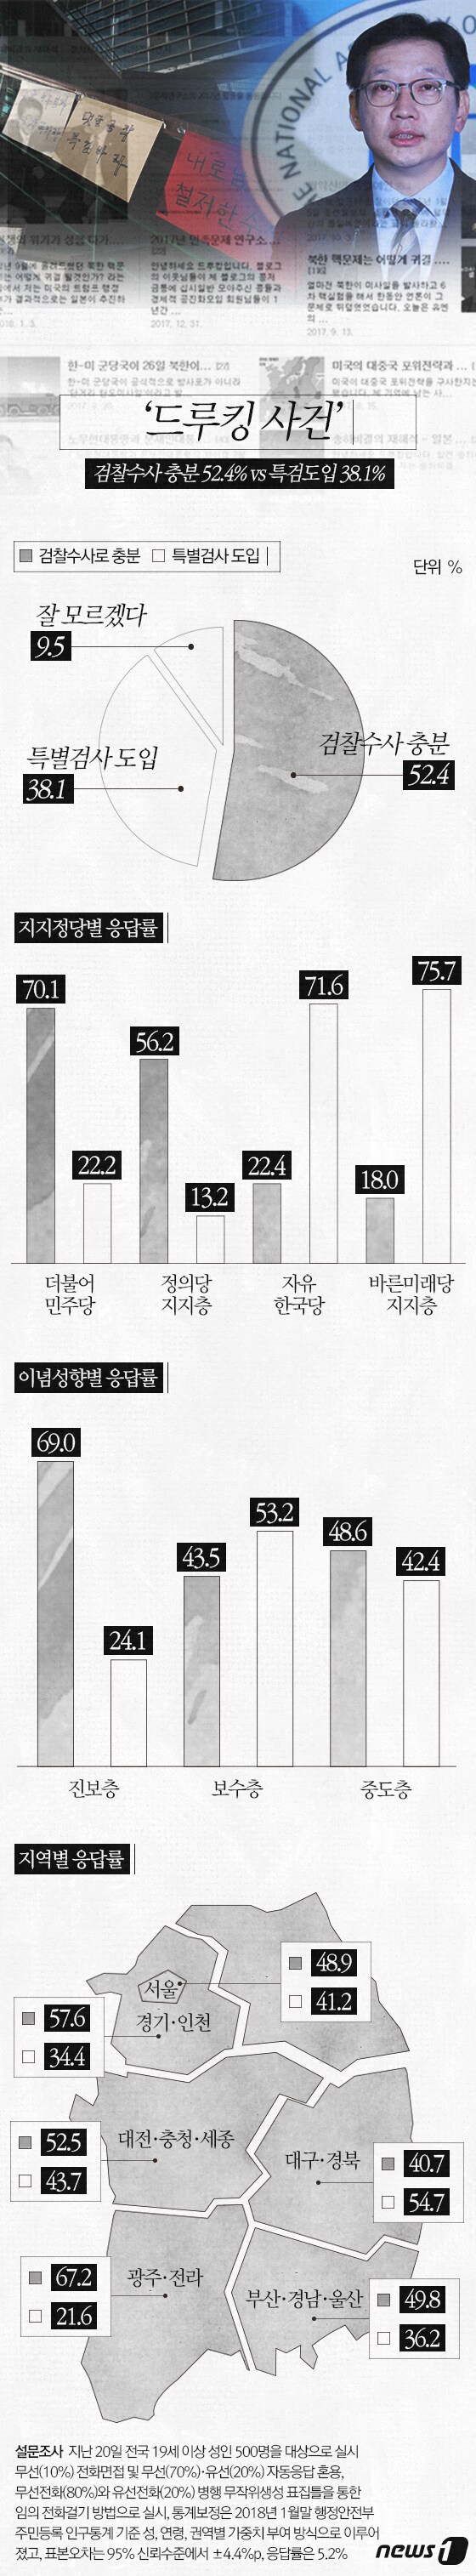 [그래픽뉴스] '드루킹 사건' 검찰수사 충분 52.4% vs 특검도입 38.1%